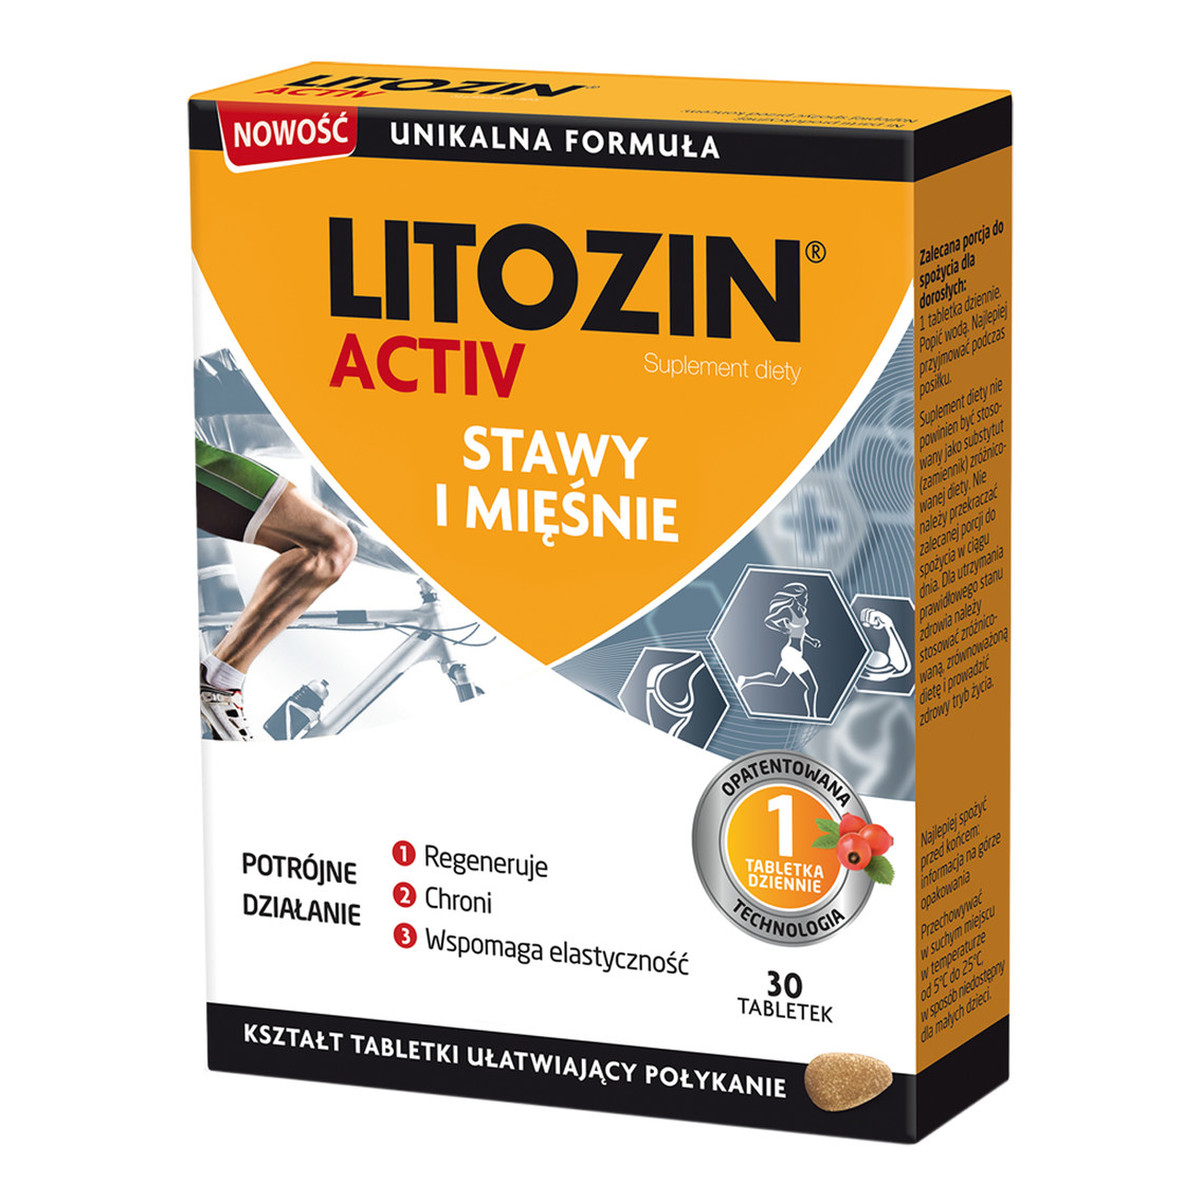 Litozin Activ stawy i mięśnie suplement diety 30 tabletek